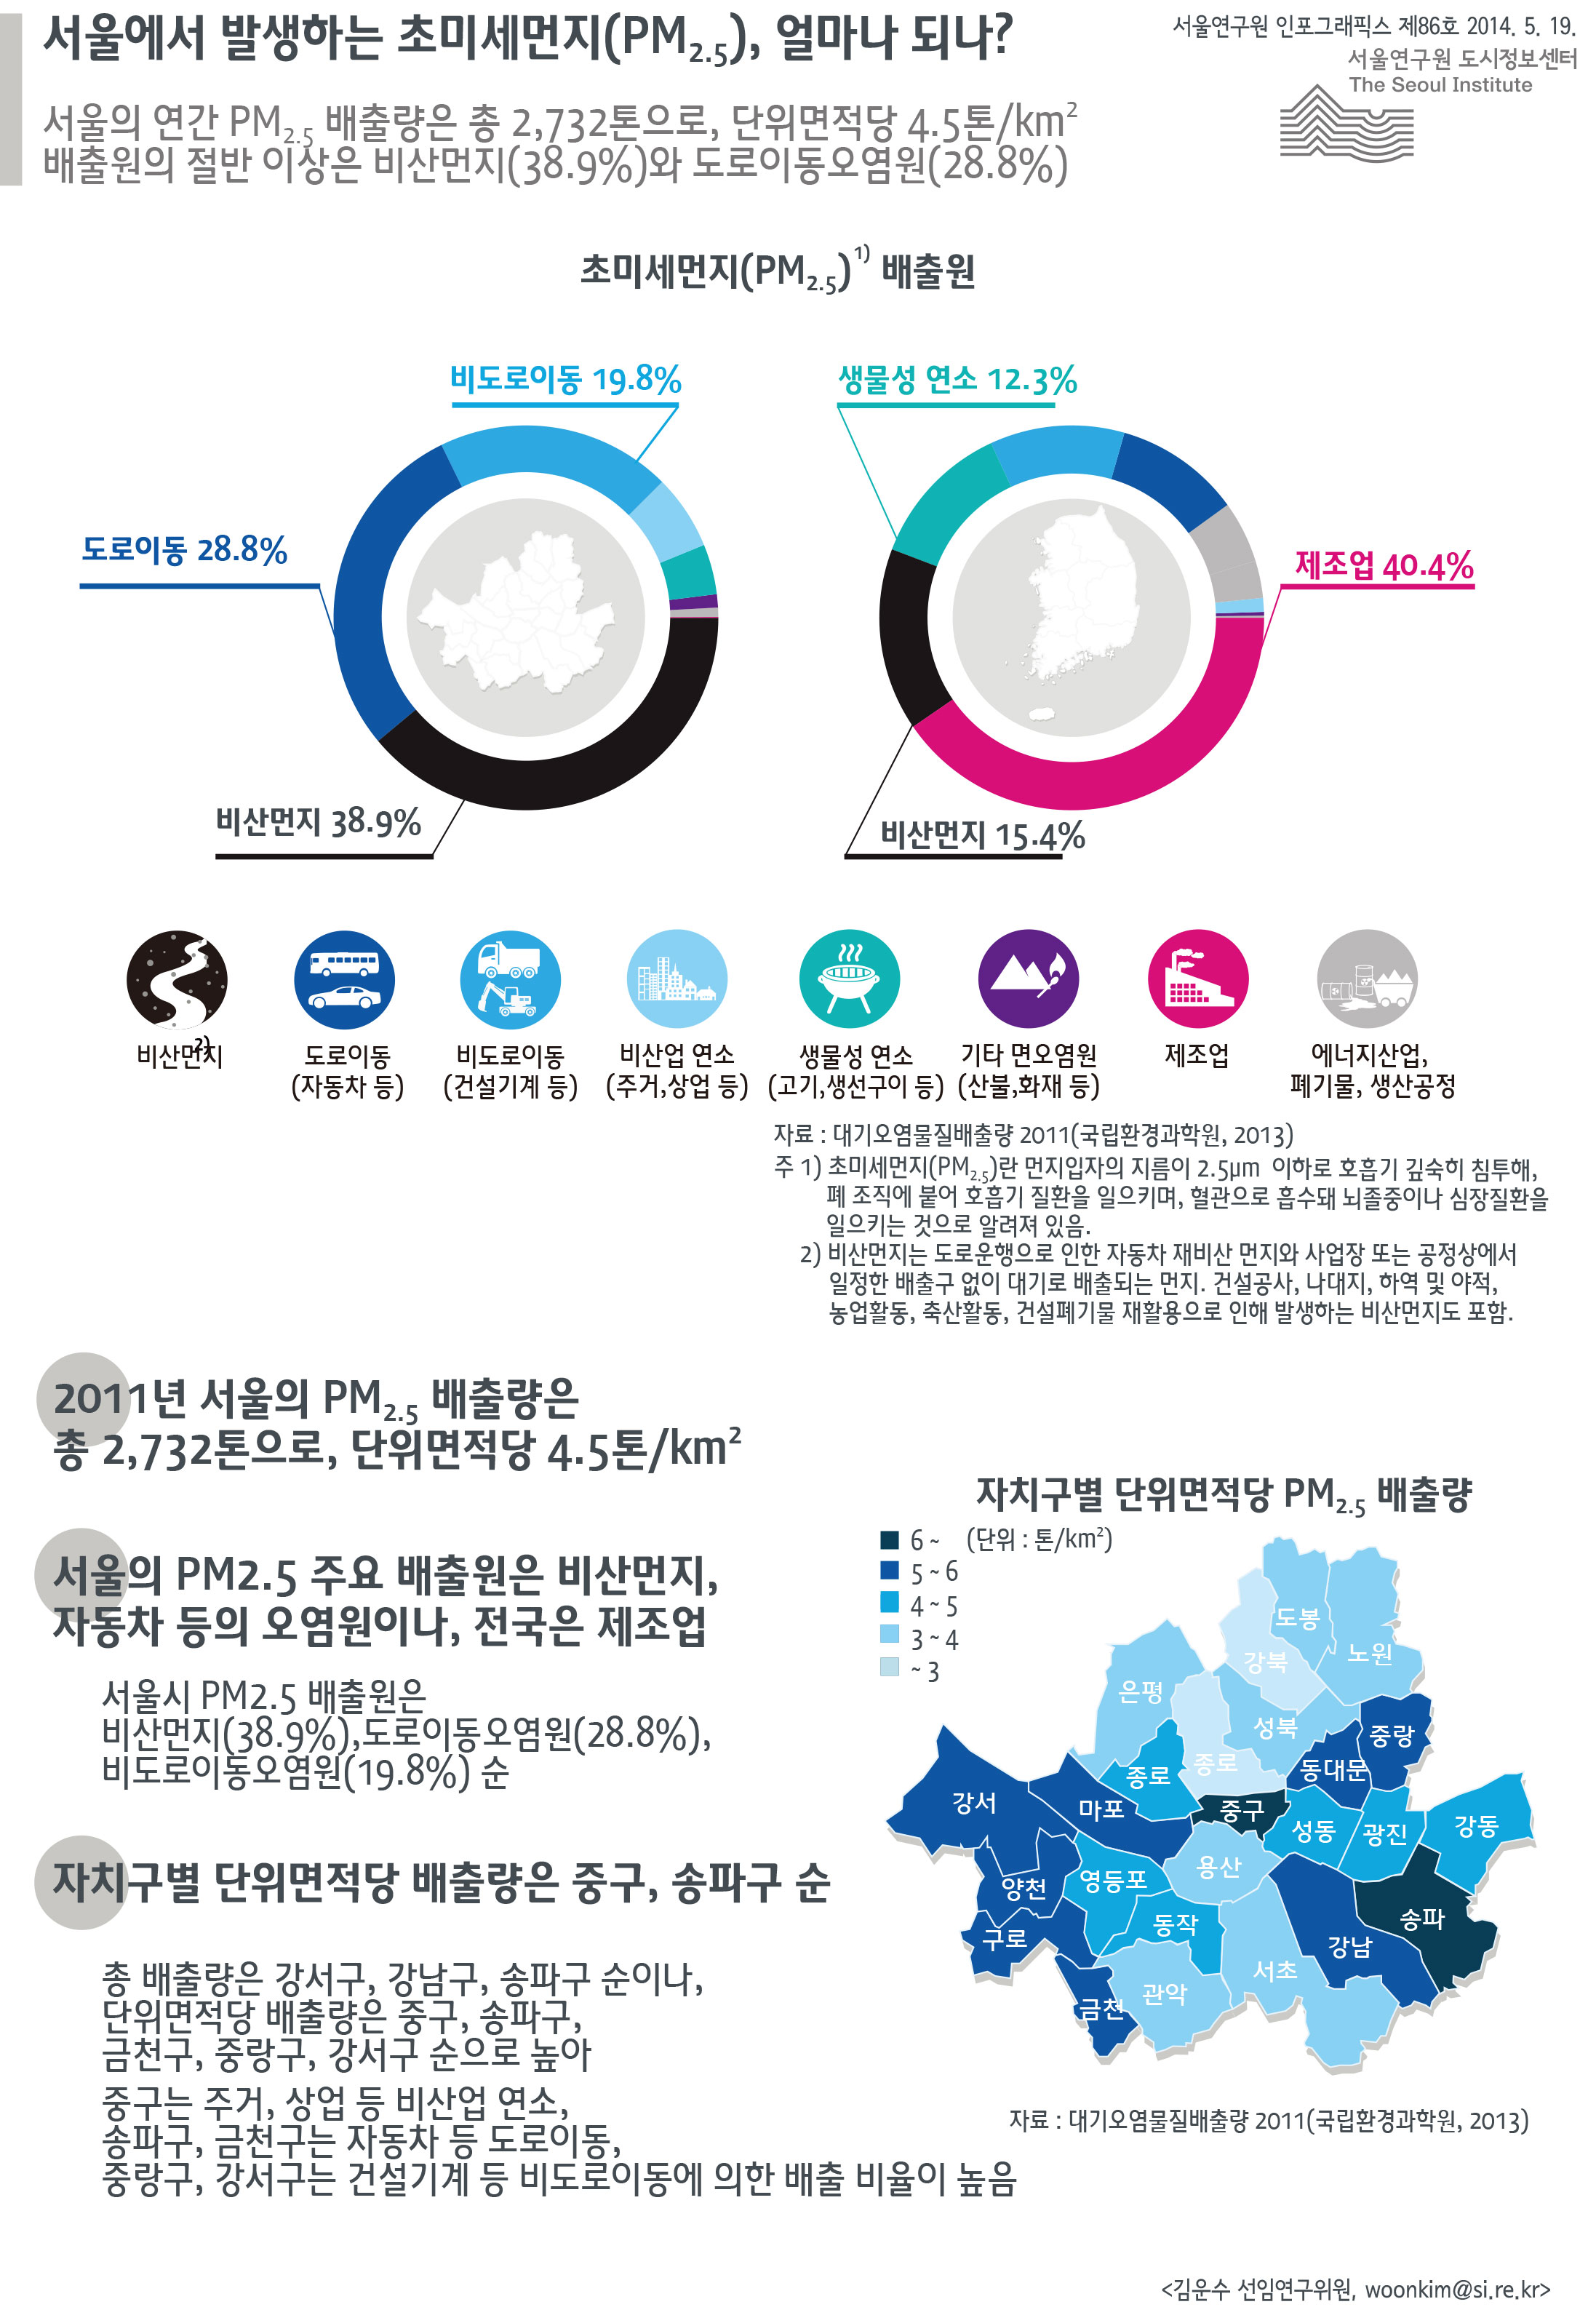 서울에서 발생하는 초미세먼지(PM2.5), 얼마나 되나? 서울인포그래픽스 제86호 2014년 5월 19일 서울의 연간 PM2.5 배출량은 2,732톤으로, 단위면적당 4.5톤/km2. 배출원의 절반 이상은 비산먼지(38.9%)와 도로이동오염원(28.8%)으로 정리될 수 있습니다. 인포그래픽으로 제공되는 그래픽은 하단에 표로 자세히 제공됩니다.